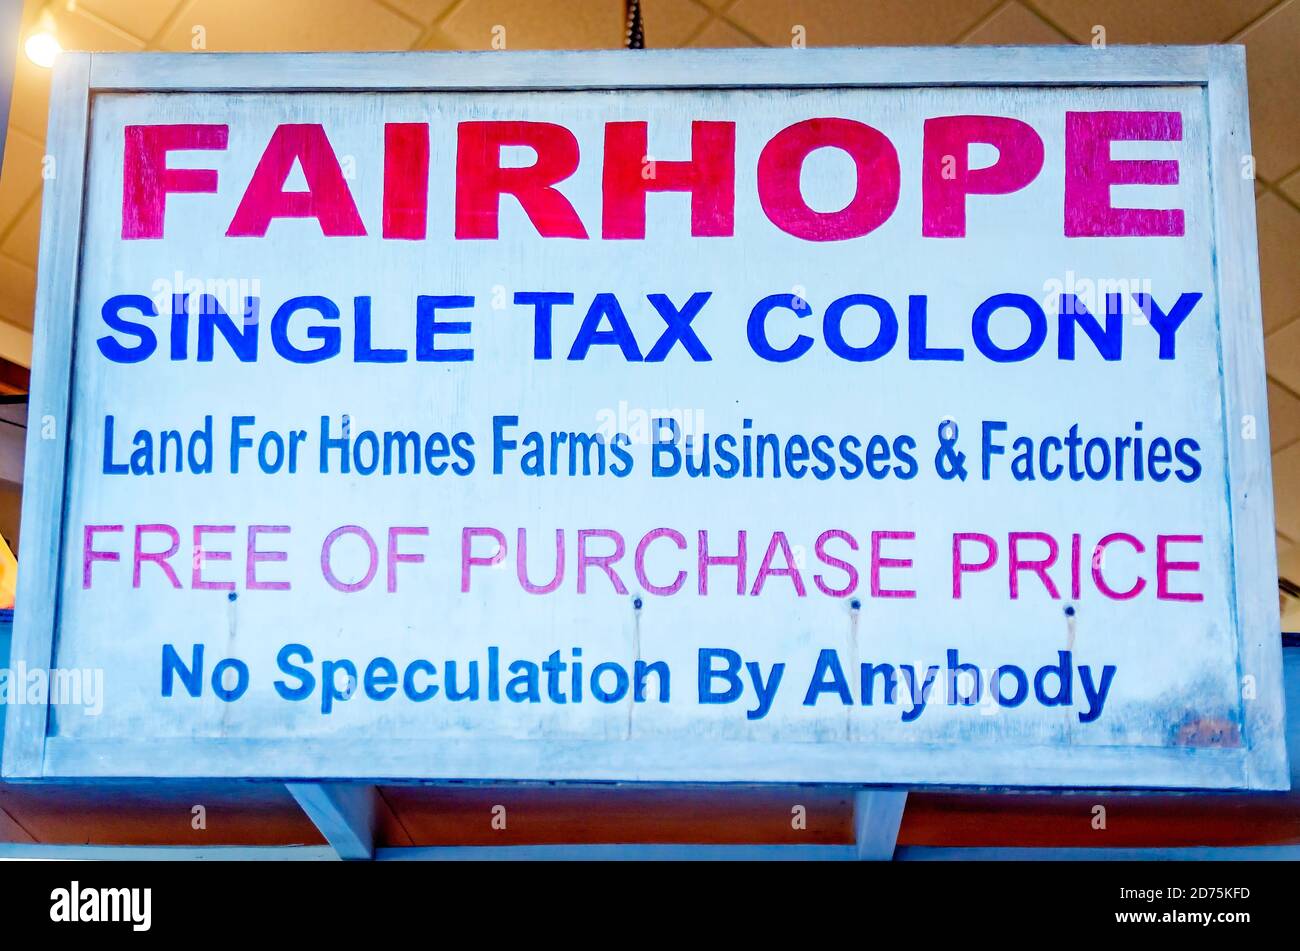 Un vecchio segno stabilisce Fairhope come una colonia di tasse singole a Fairhope Museum of History, 17 ottobre 2020, a Fairhope, Alabama. Foto Stock